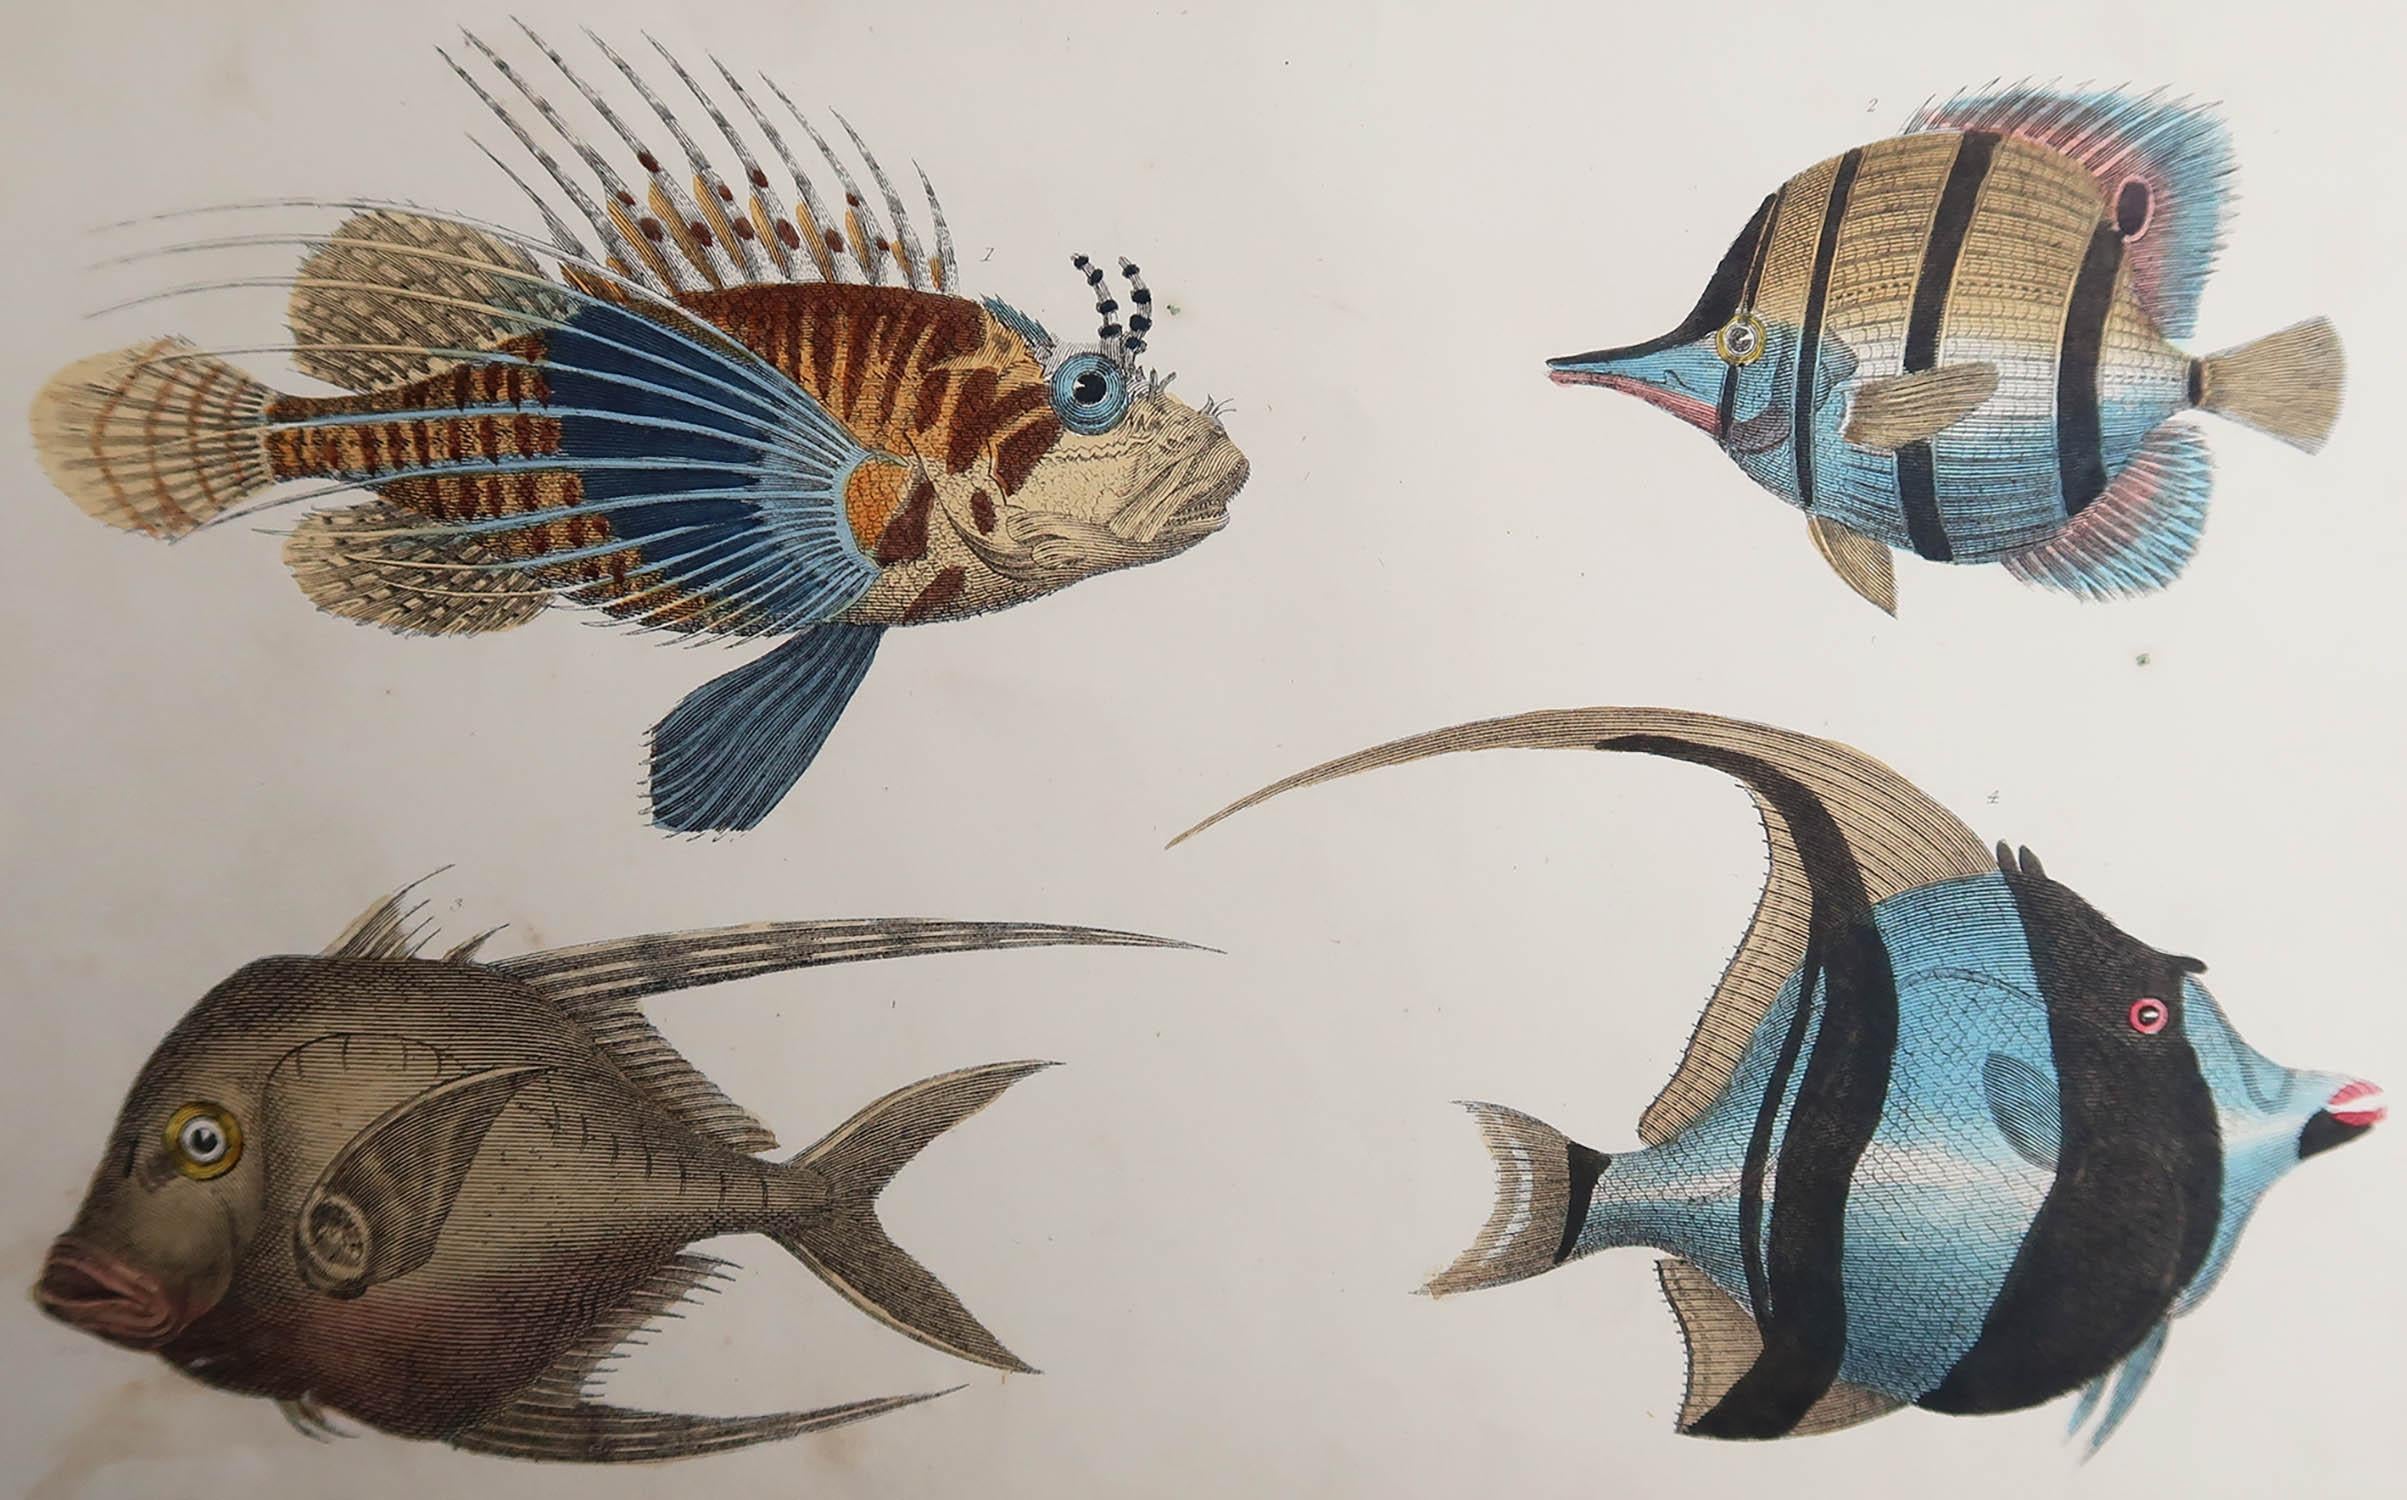 Superbe image de poisson.

Non encadré. Il vous donne la possibilité de réaliser un montage en utilisant les cadres de votre choix.

Lithographie d'après le Cpt. Brown avec couleur originale à la main.

Publié en 1847.

  






